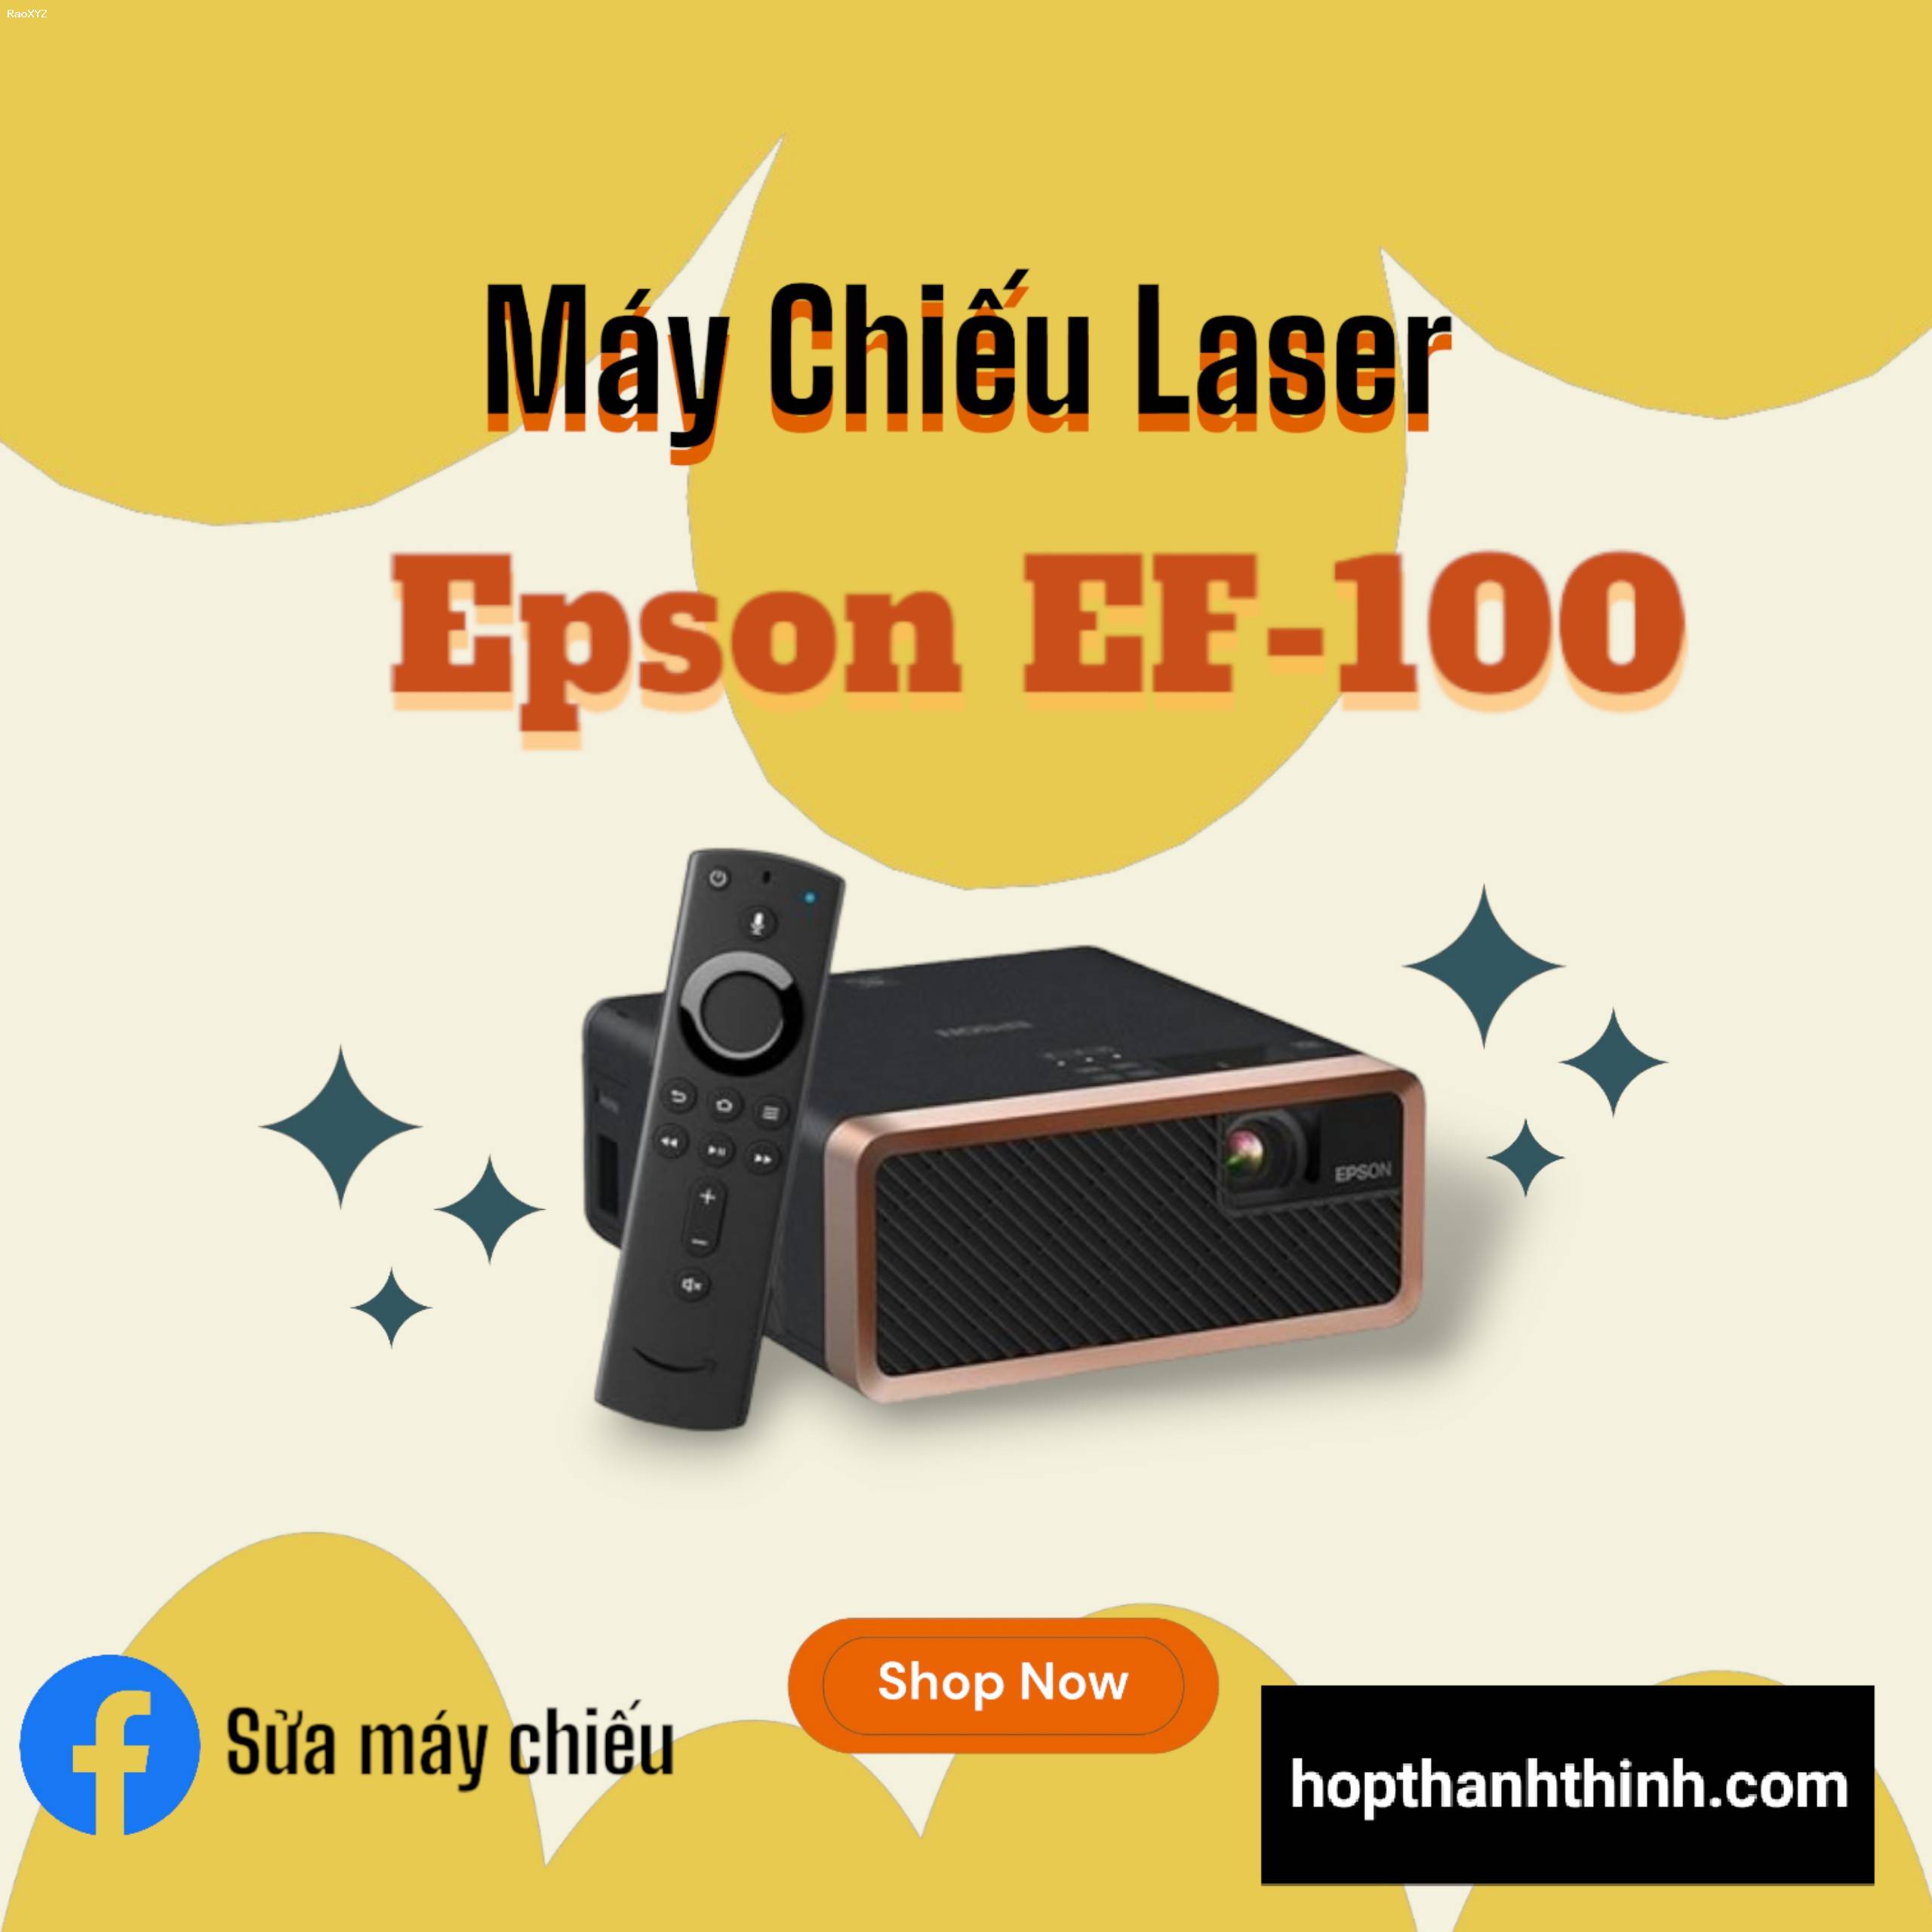 Máy chiếu Laser Epson EF-100